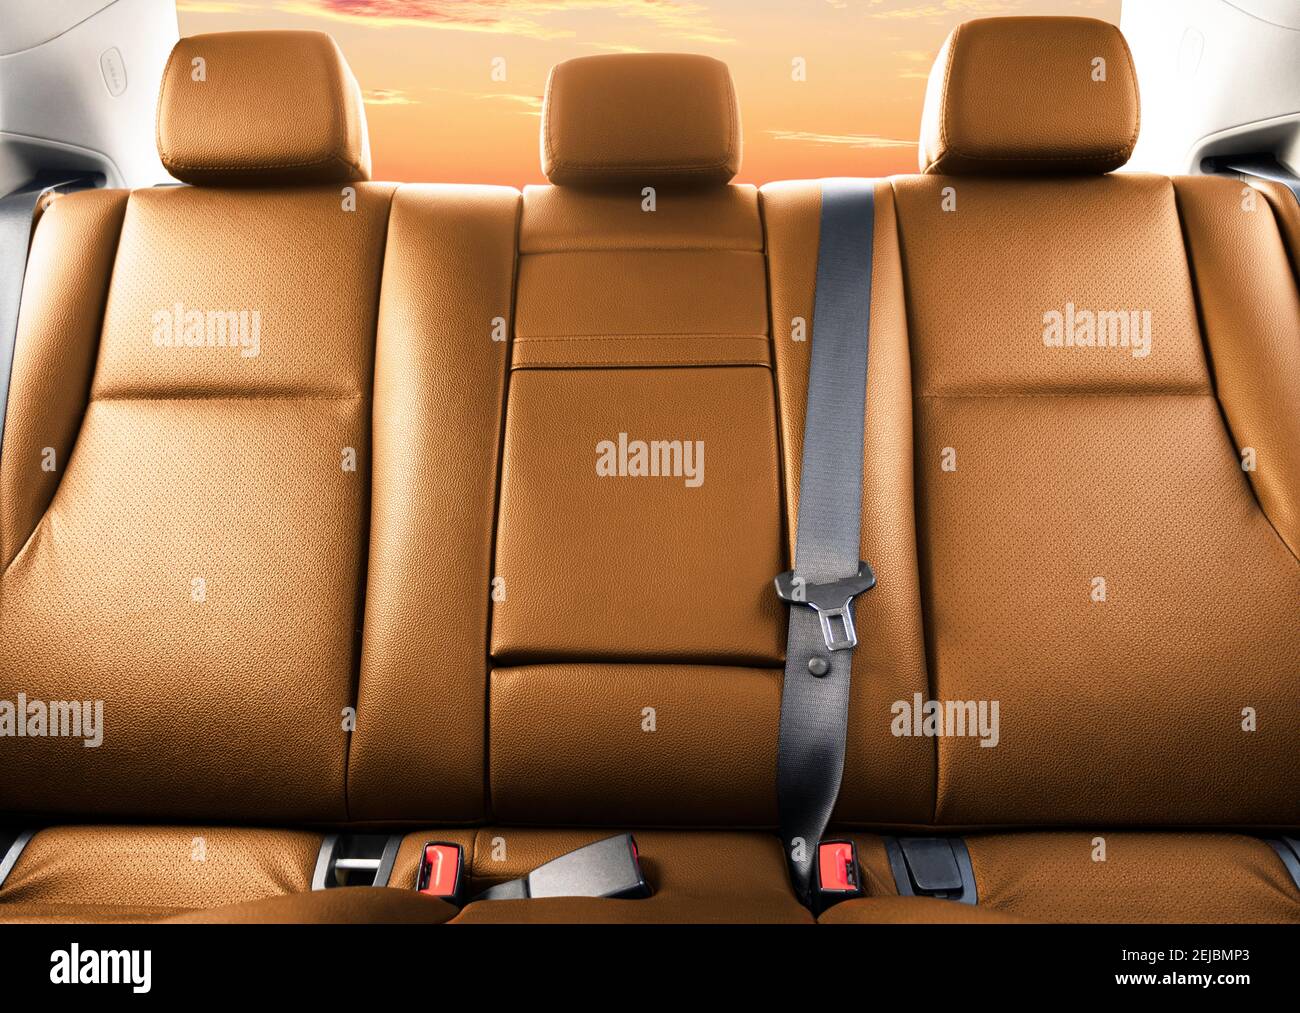 Rücksitz in braunem Leder Sitze in modernen Luxus-Auto. Orangefarbenes  perforiertes Leder mit Ziernaht. Auto im Inneren. Bequeme braune  Ledersitze. Auto in Stockfotografie - Alamy